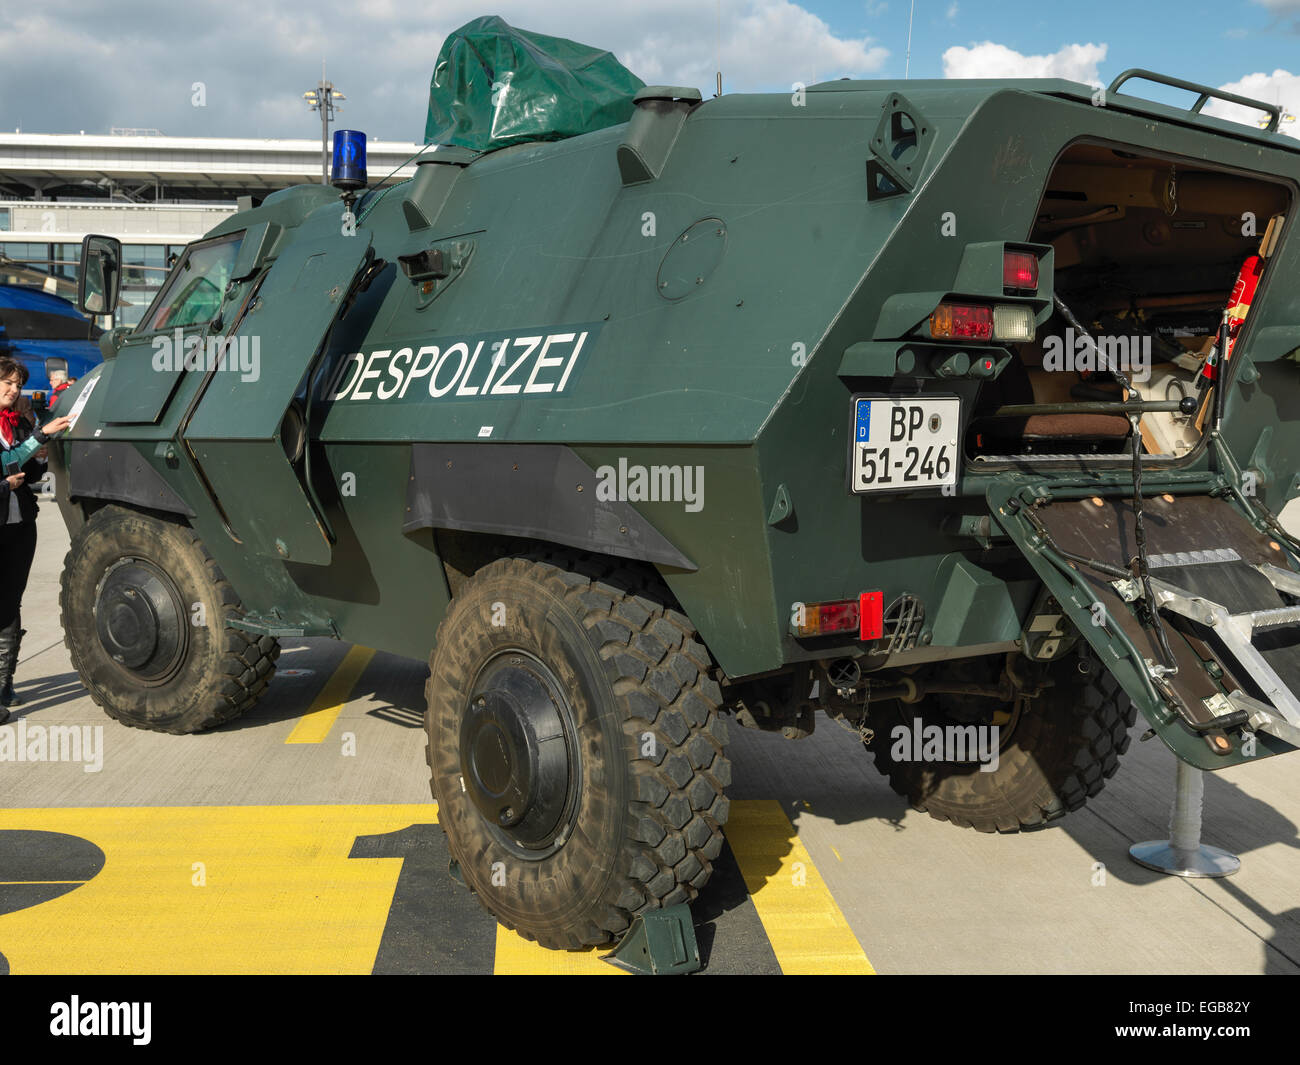 Gepanzertes Fahrzeug der deutschen Bundespolizei, genannt "Sonderwagen 4" auf dem Display. Stockfoto